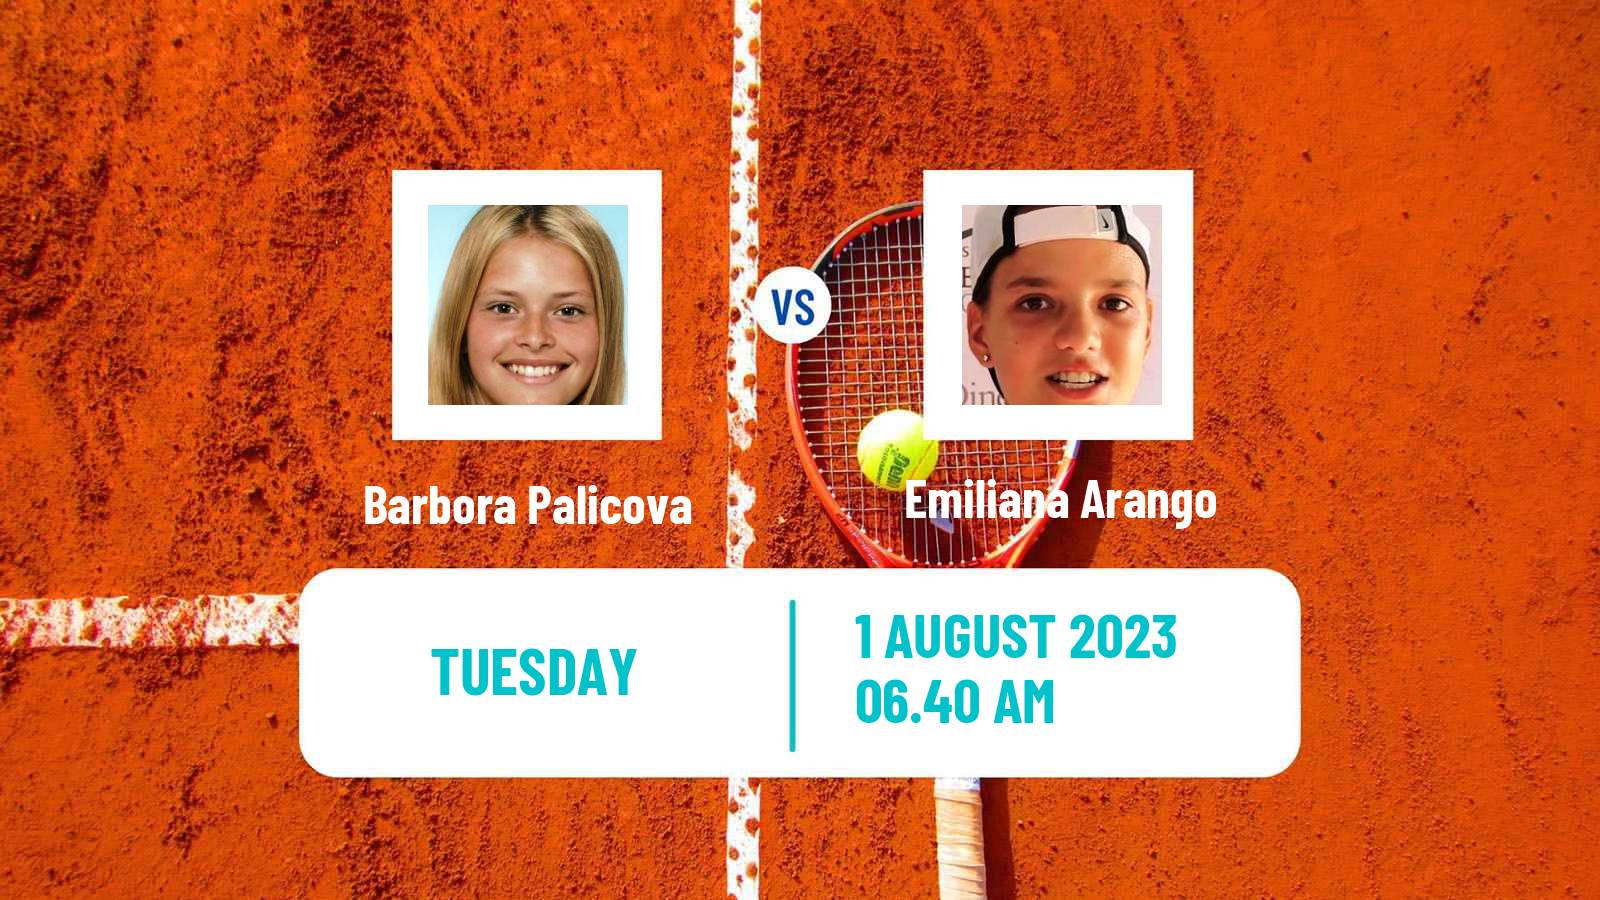 Tennis WTA Prague Barbora Palicova - Emiliana Arango